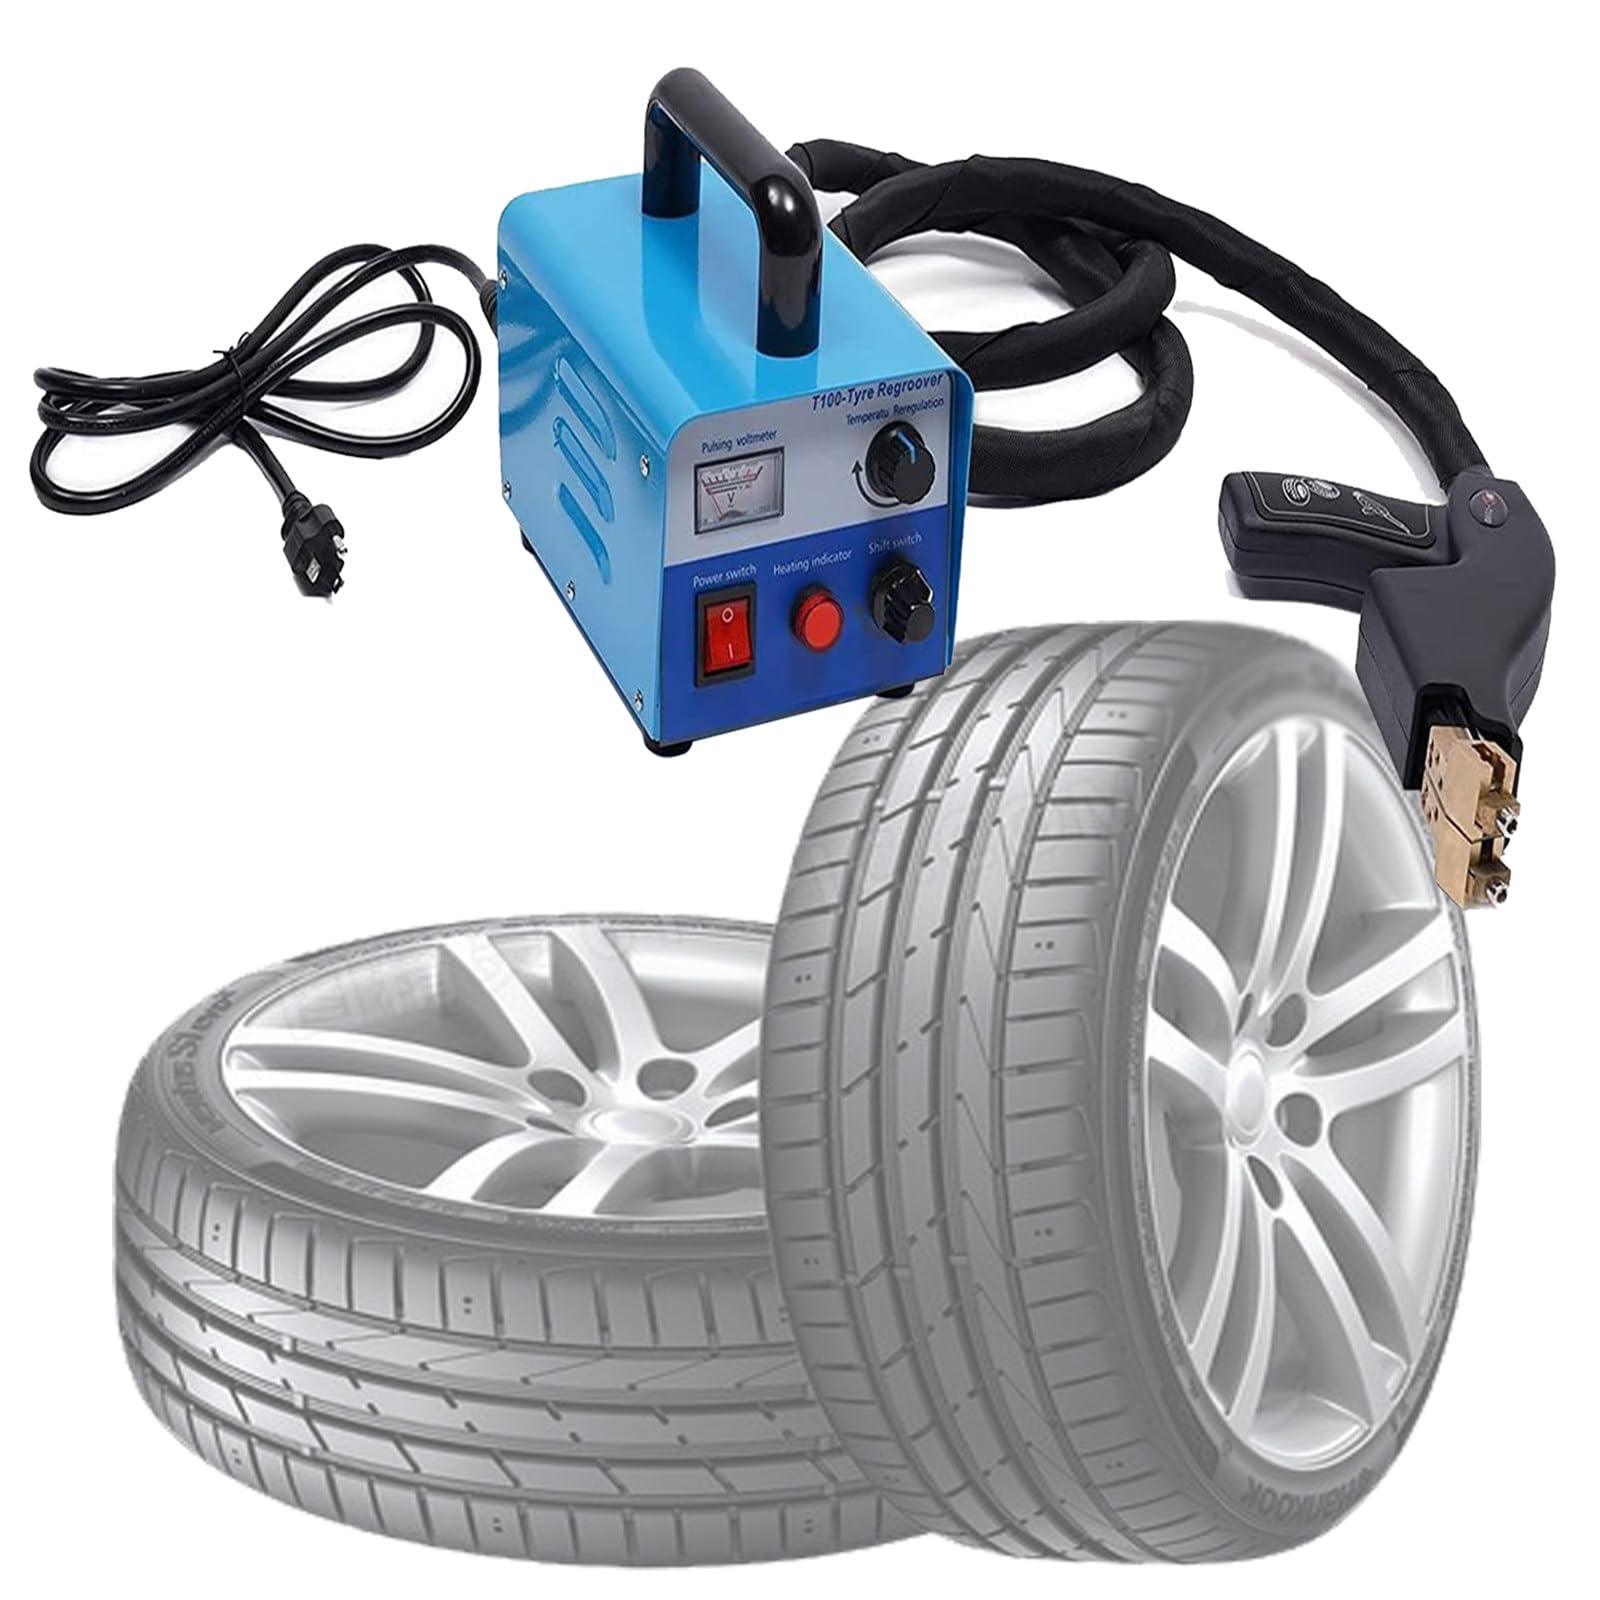 DOZPAL Professionelles Reifennutwerkzeug – 350 W beheizte Reifennachschneidemaschine, elektrische Reifenschnitzmaschine mit U/V-förmigen Klingen, für Kart-Reifen, ATV-Reifen, Industriereifen